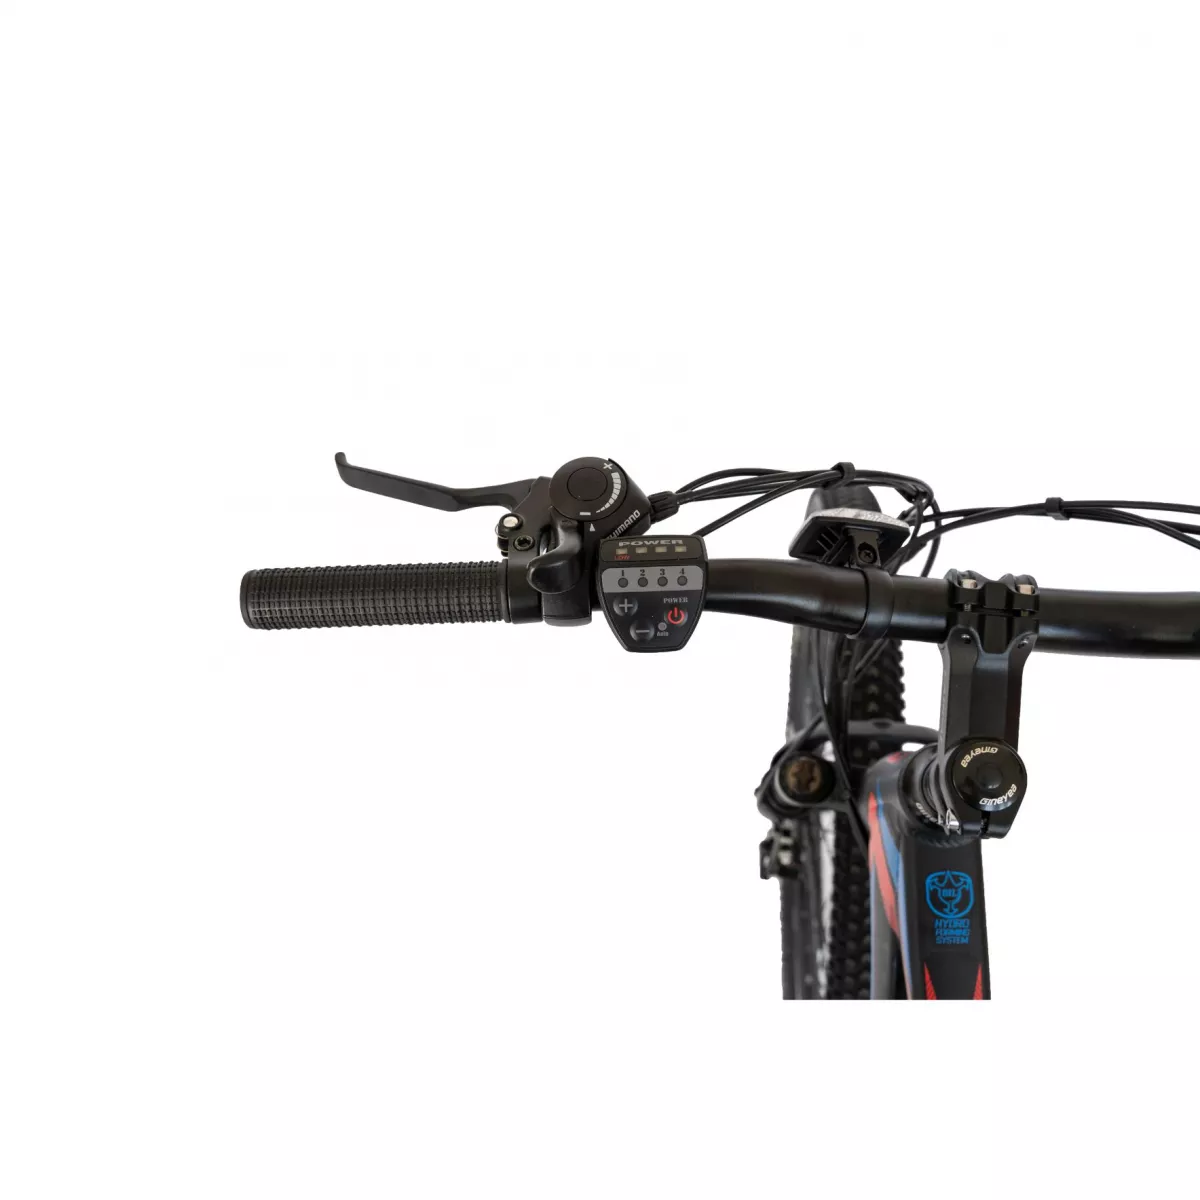 Bicicleta electrica MTB (E-BIKE) CARPAT 27.5" C1009E, cadru aluminiu, frane mecanice disc, transmisie SHIMANO 21 viteze, culoare negru/rosu